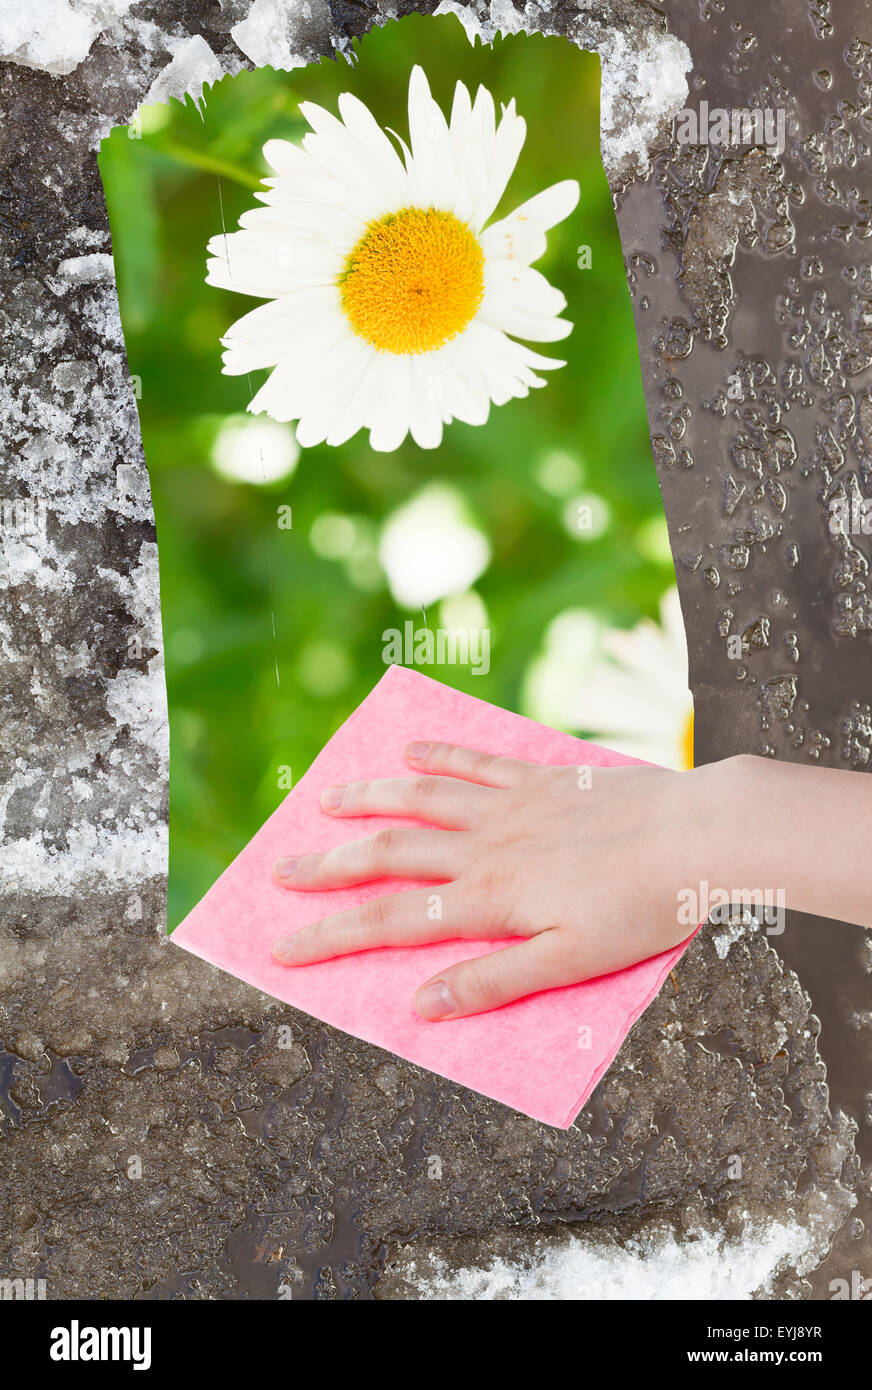 Saison Konzept - Hand löscht Schneeschmelze durch rosa Tuch aus Bild und grüner Wiese mit Blume erscheint Stockfoto